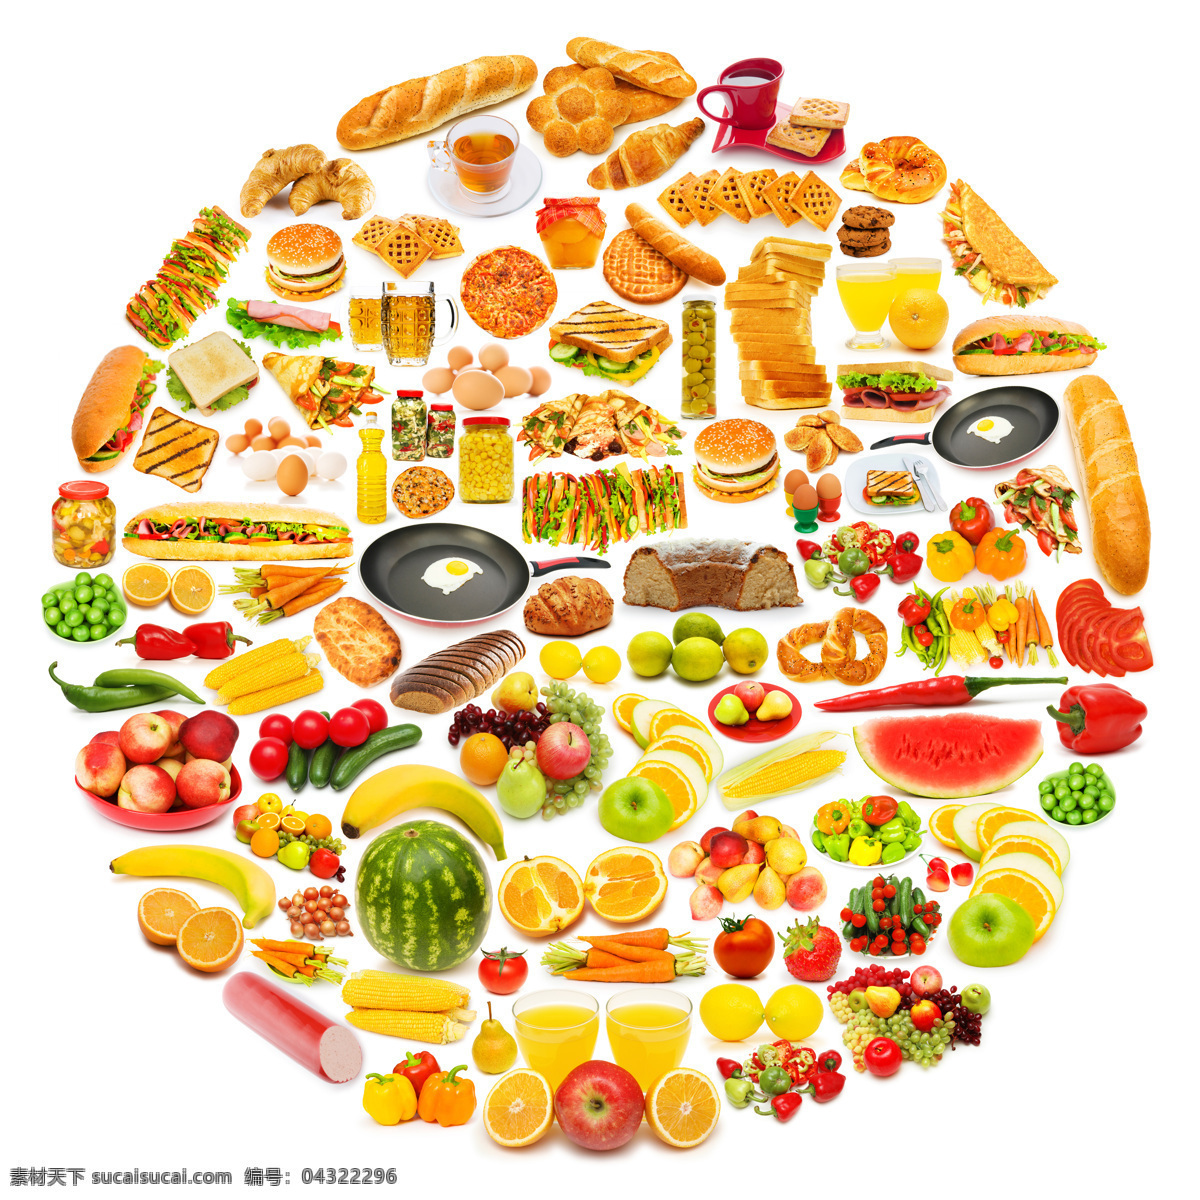 各种 食物 美食 可口 好味道 圆形 水果 土司 面包 热狗 汉堡 蔬菜图片 餐饮美食